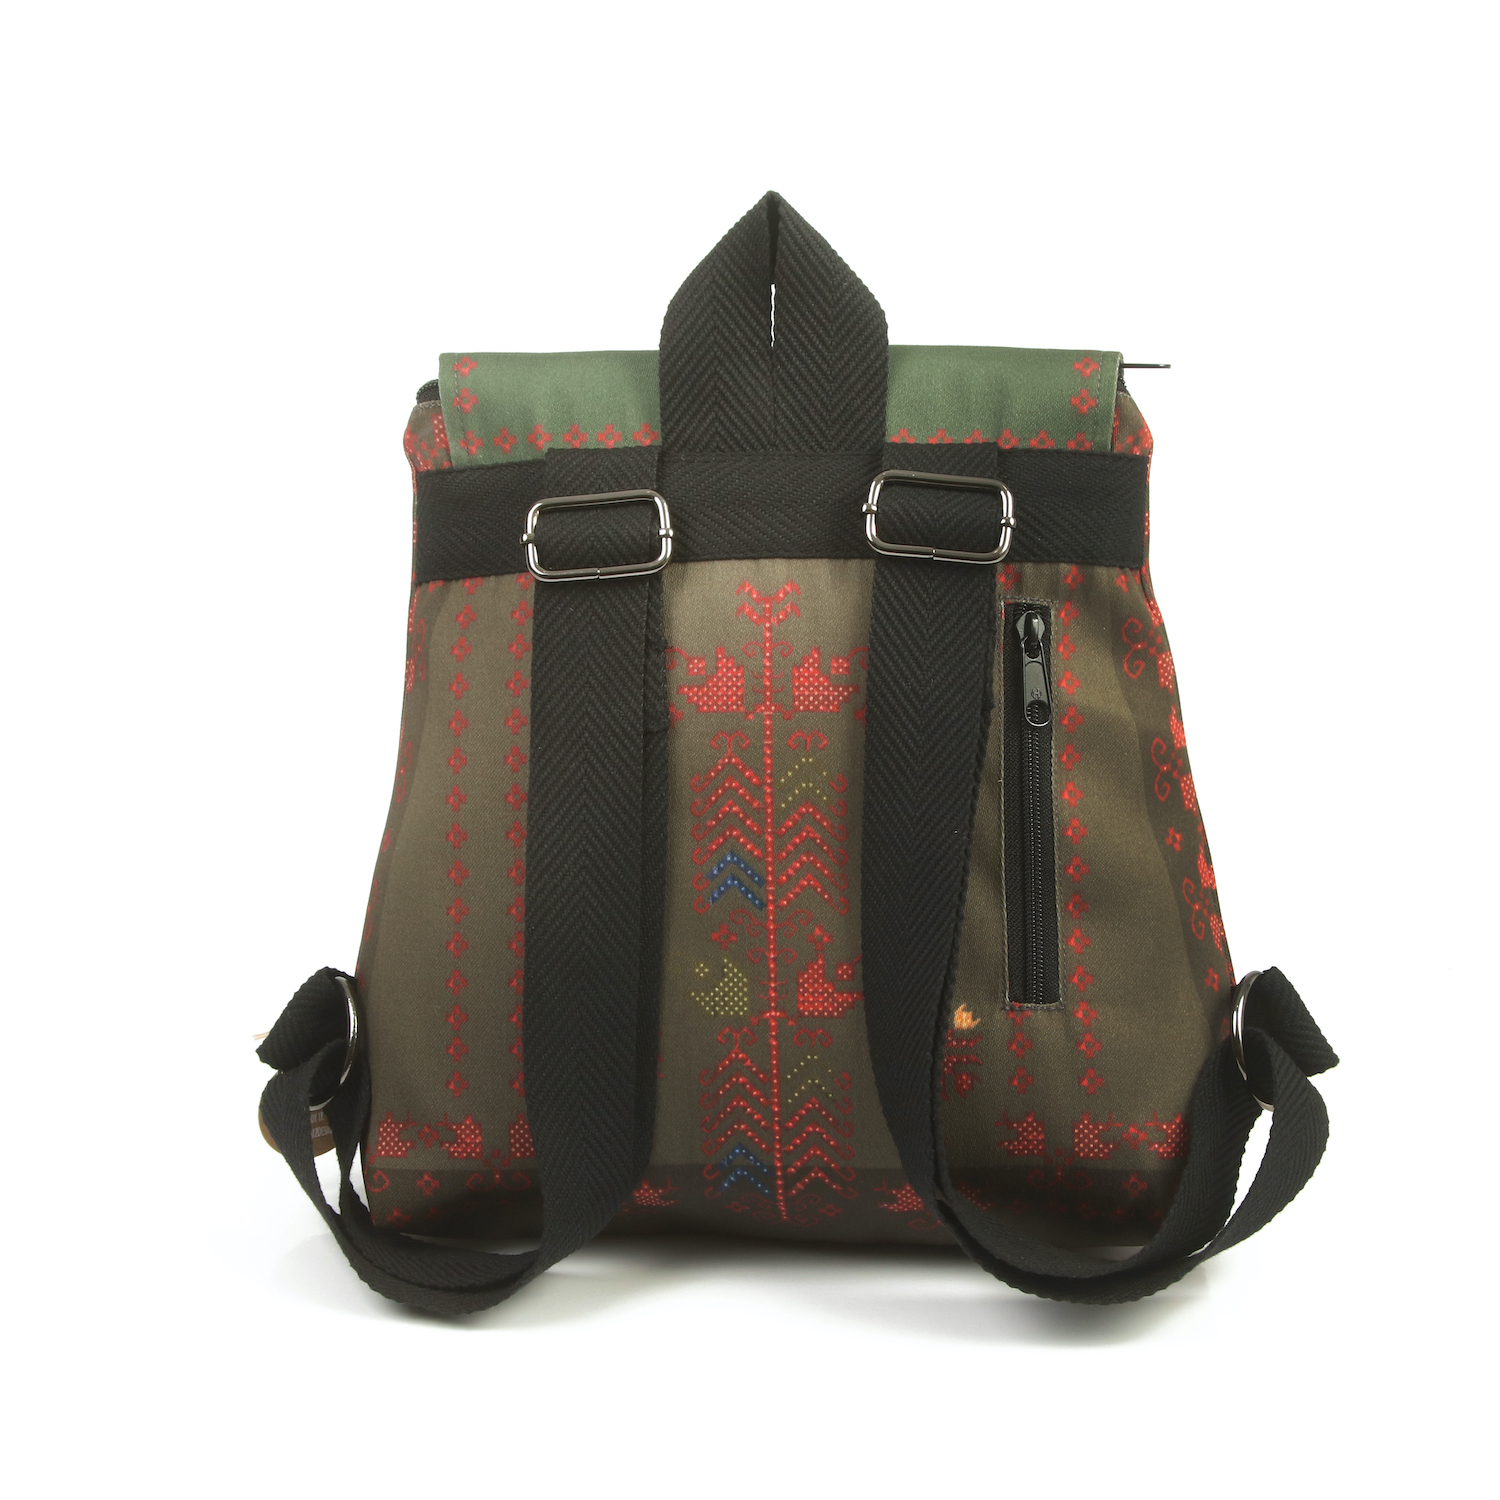 LazyDayz Designs Backpack γυναικείος σάκος πλάτης χειροποίητος bb0308c